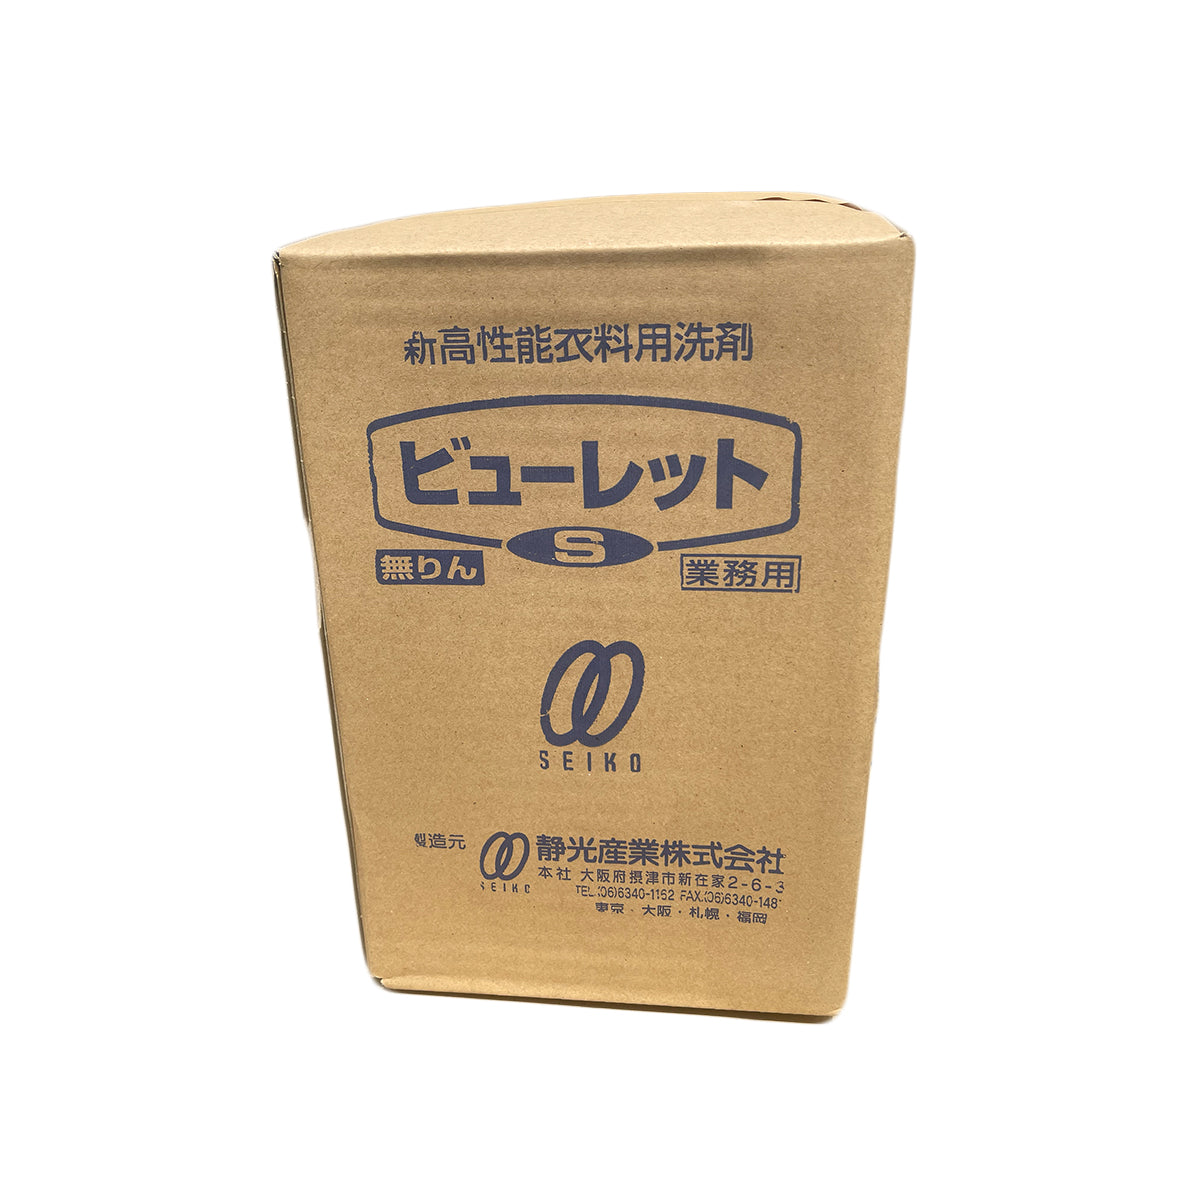 【洗濯洗剤】静光産業 サンレット ビューレットS 6kg